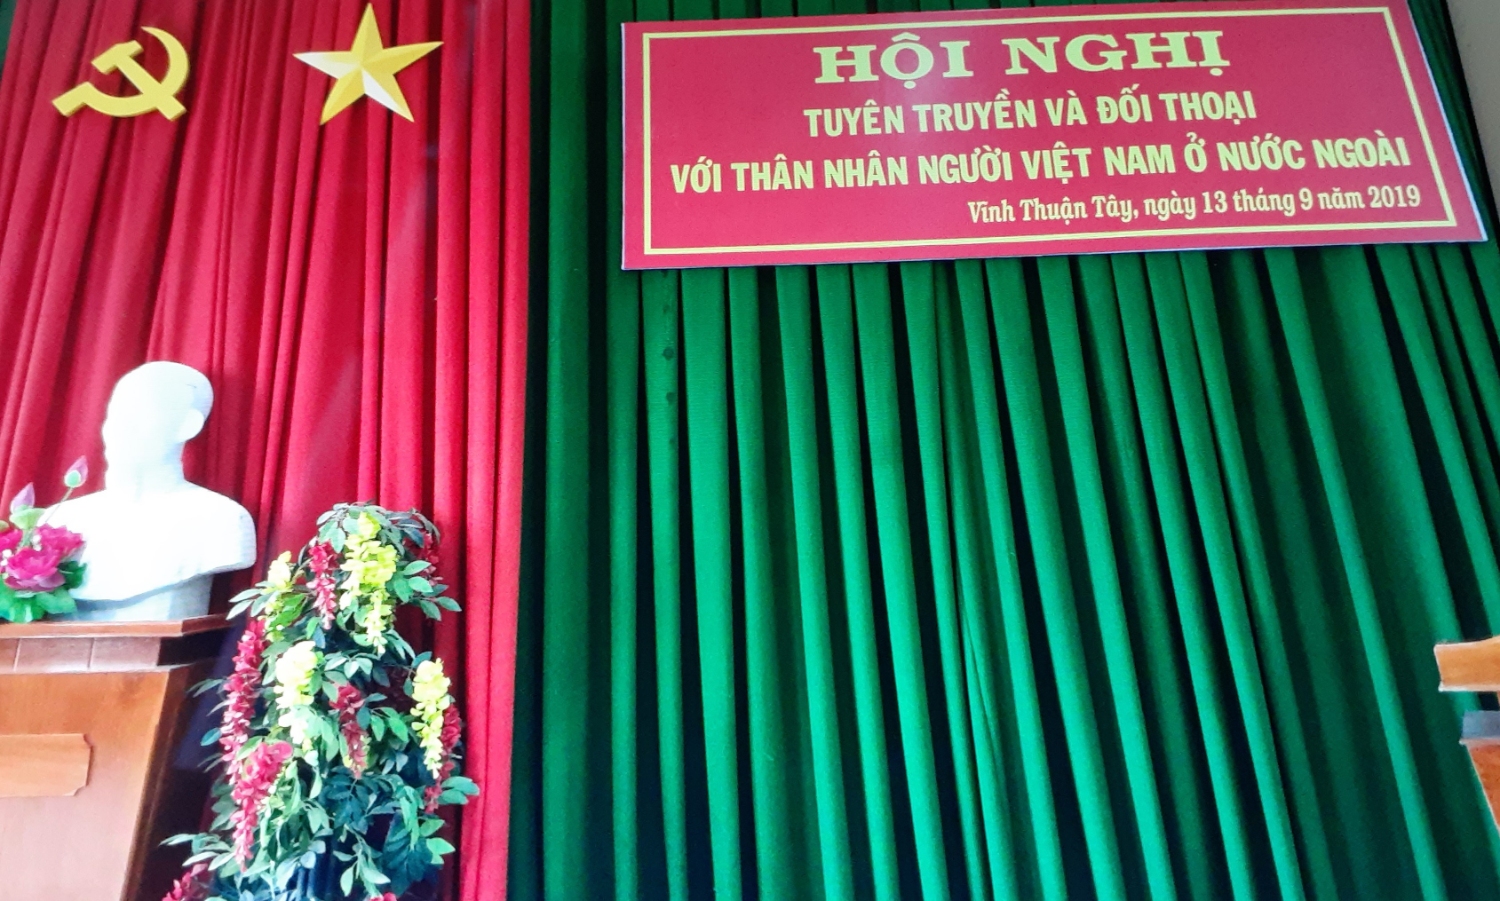 Hội nghị tuyên truyền và đối thoại với thân nhân người Việt Nam định cư ở nước ngoài